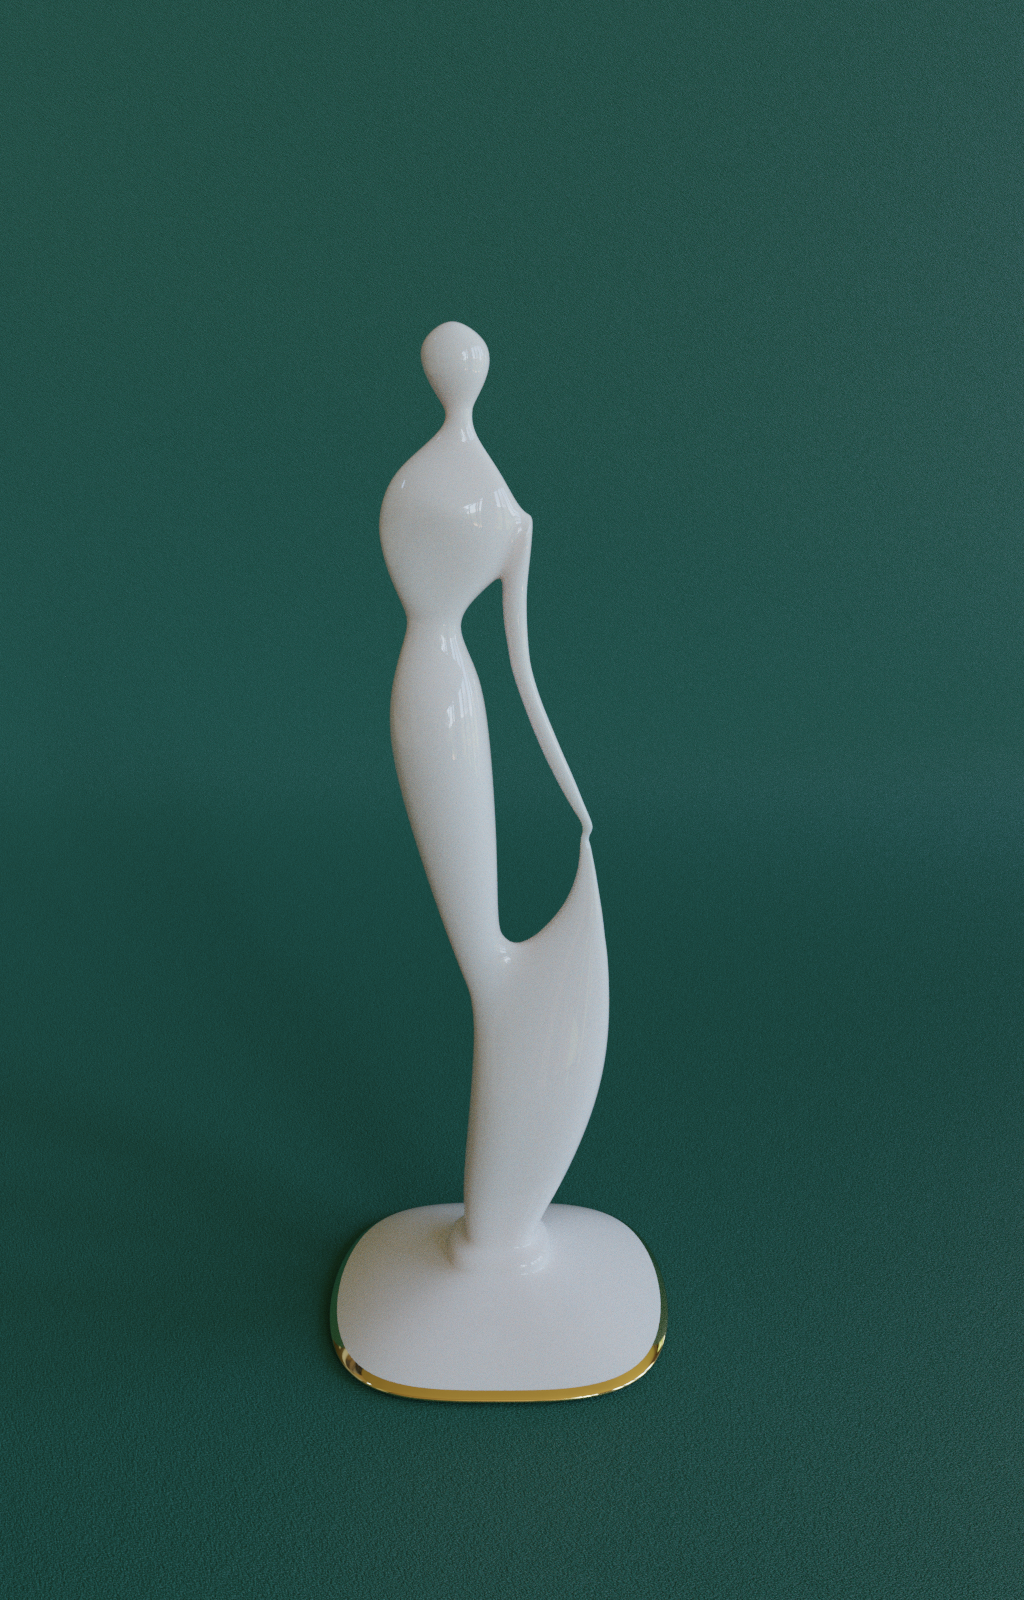 Sculpture "la femme" preview image 1